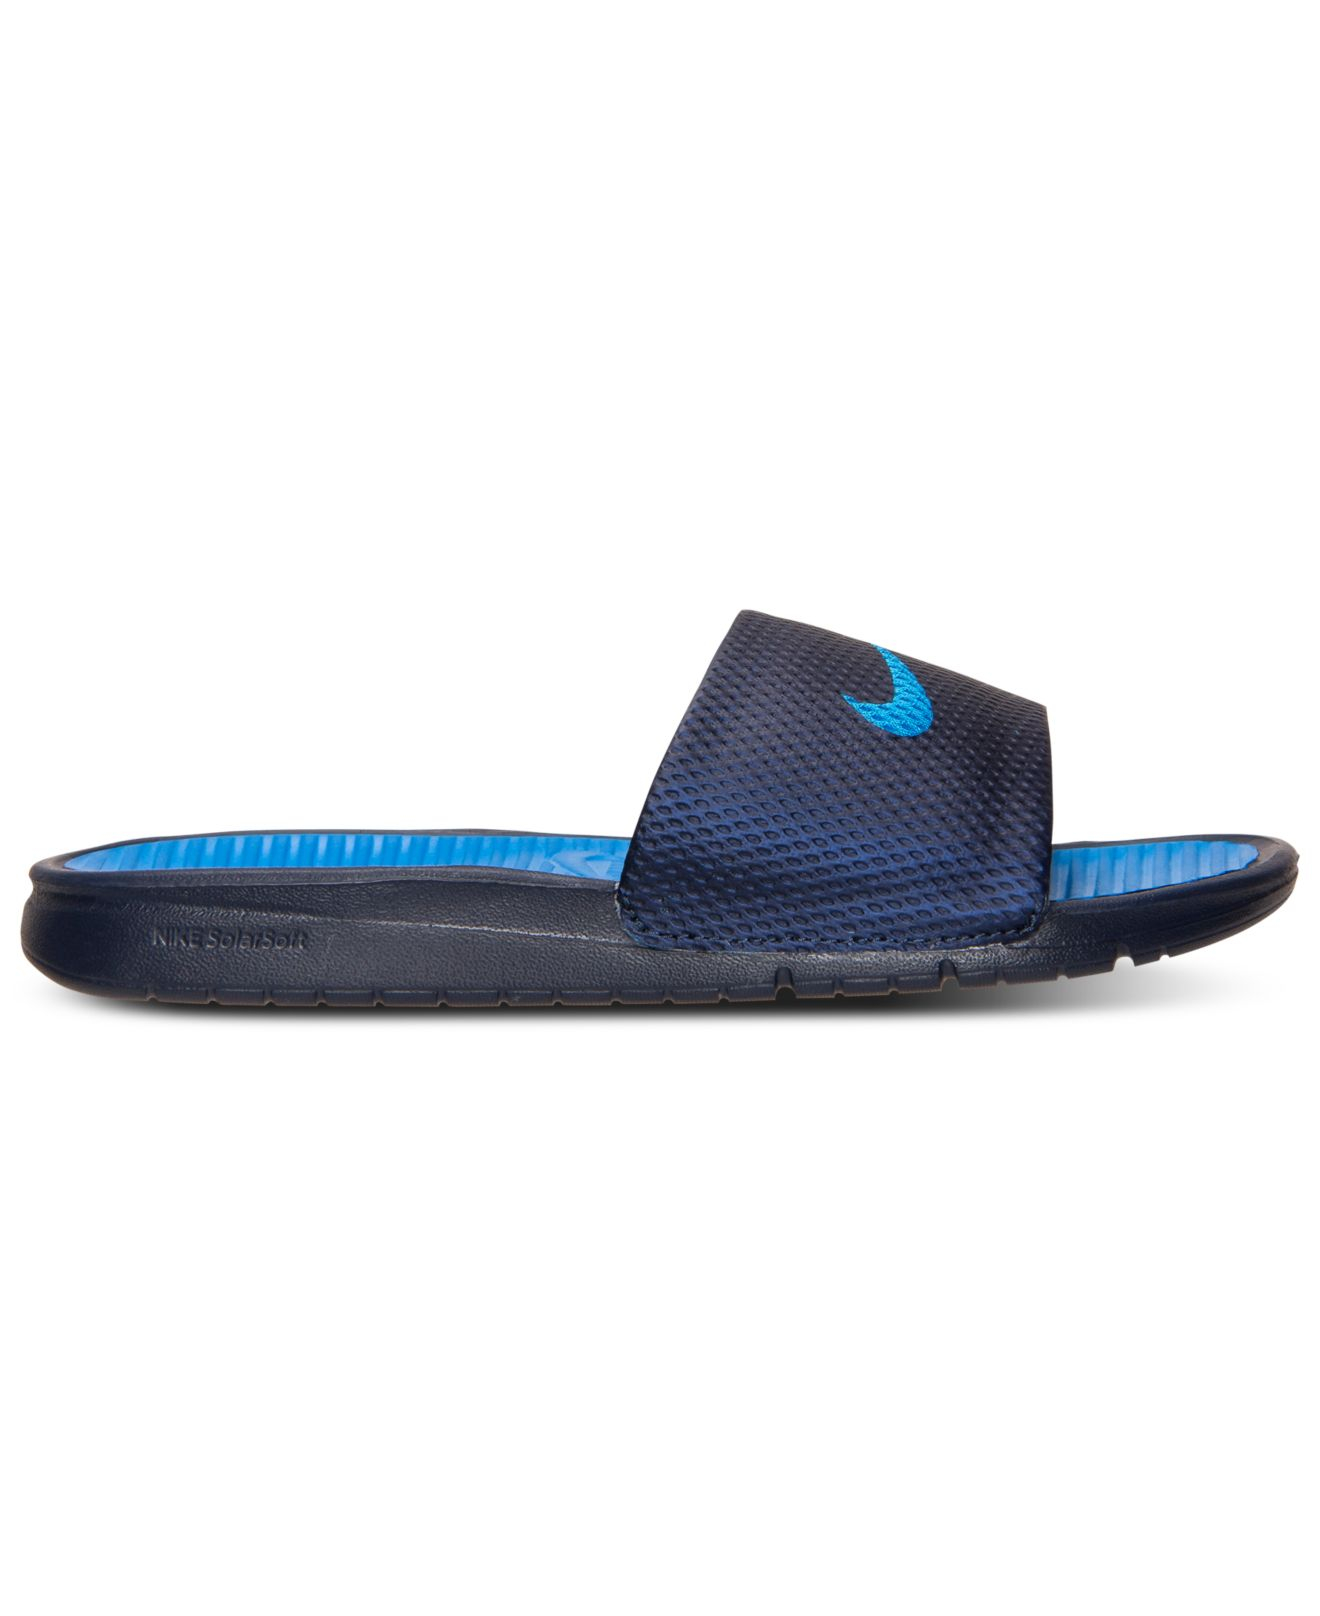 Lyst - Nike Men'S Benassi Solarsoft Slide Sandals From Finish Line in ...